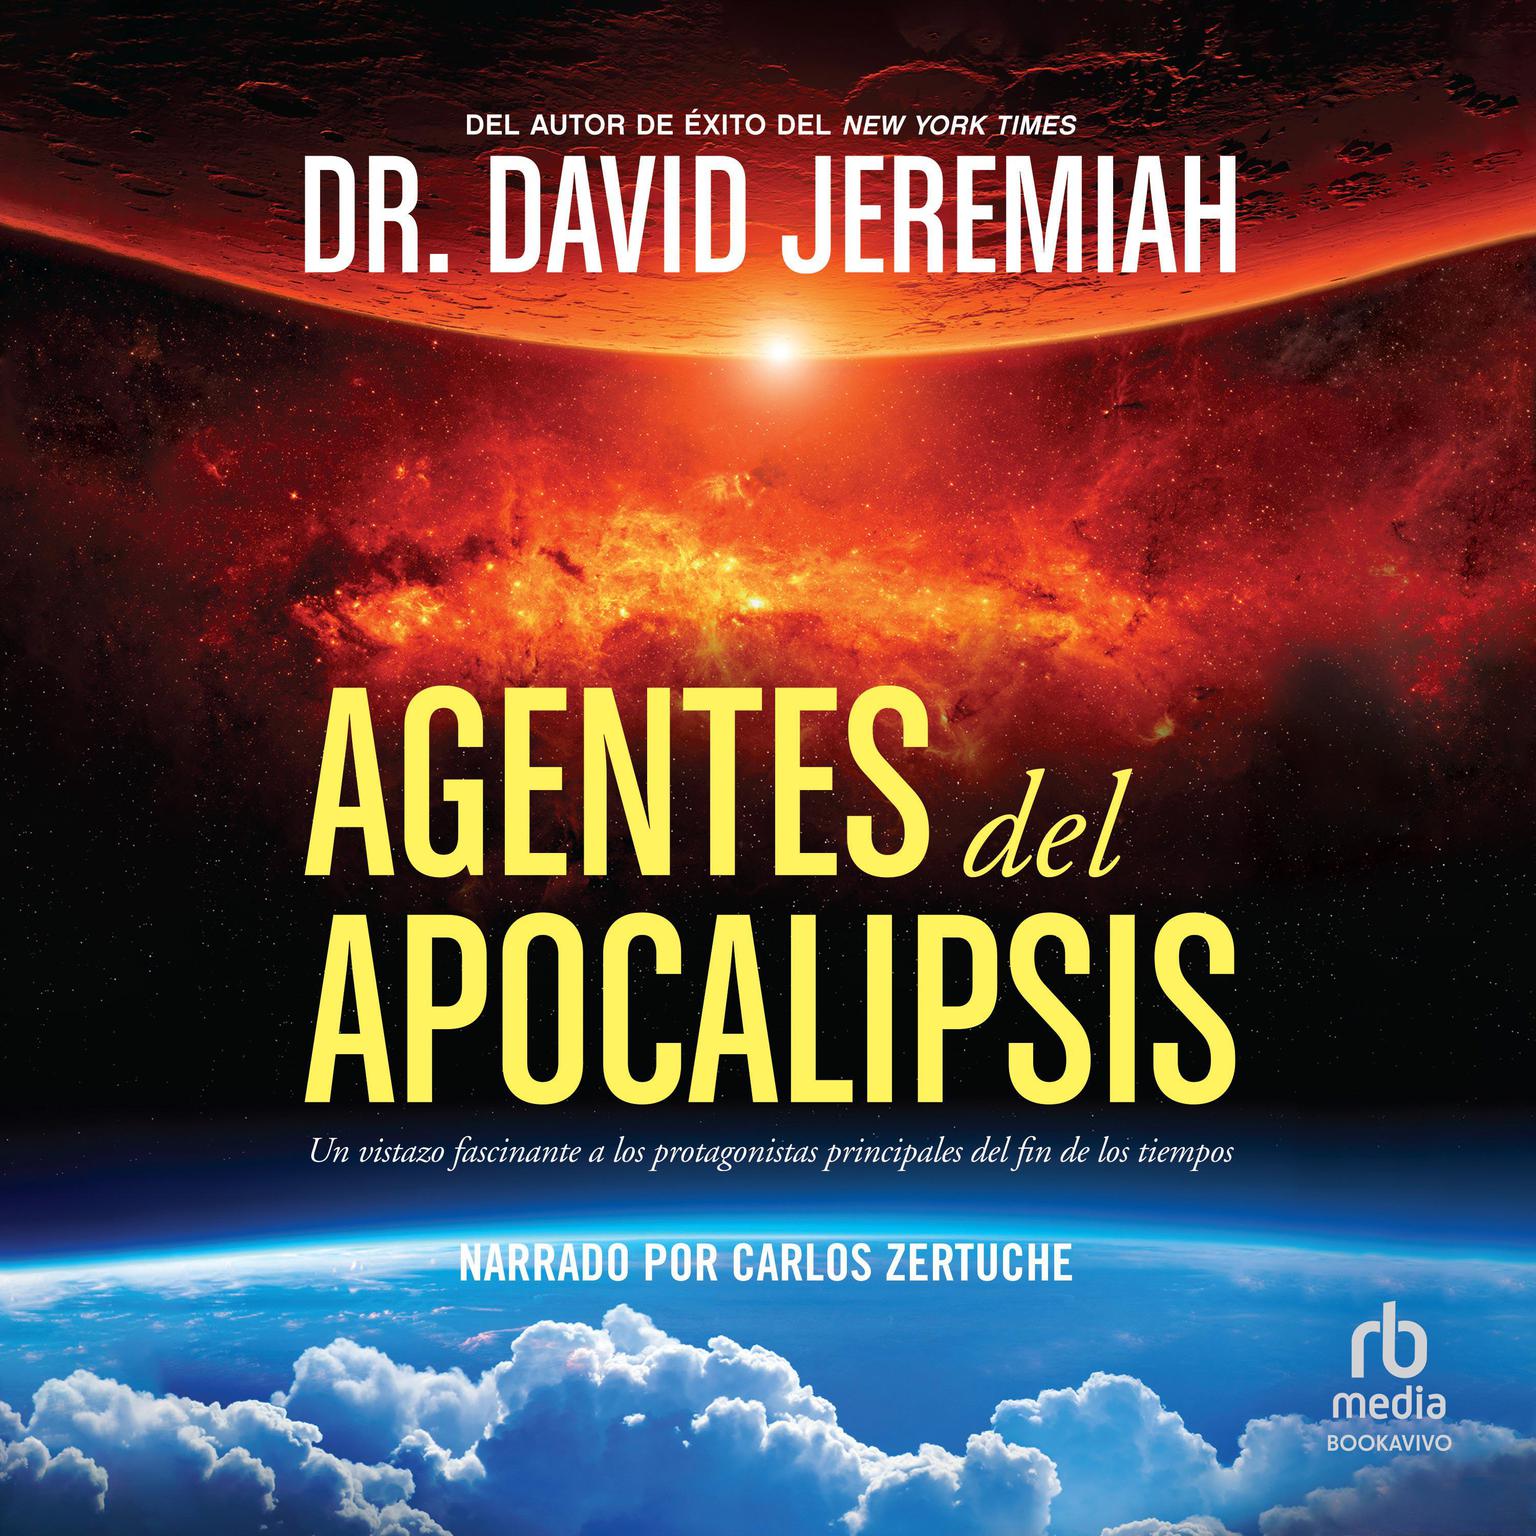 Agentes del Apocalipsis (Agents of the Apocalypse): Un vistazo fascinante a los protagonistas principales del fin de los tiempos Audiobook, by David Jeremiah